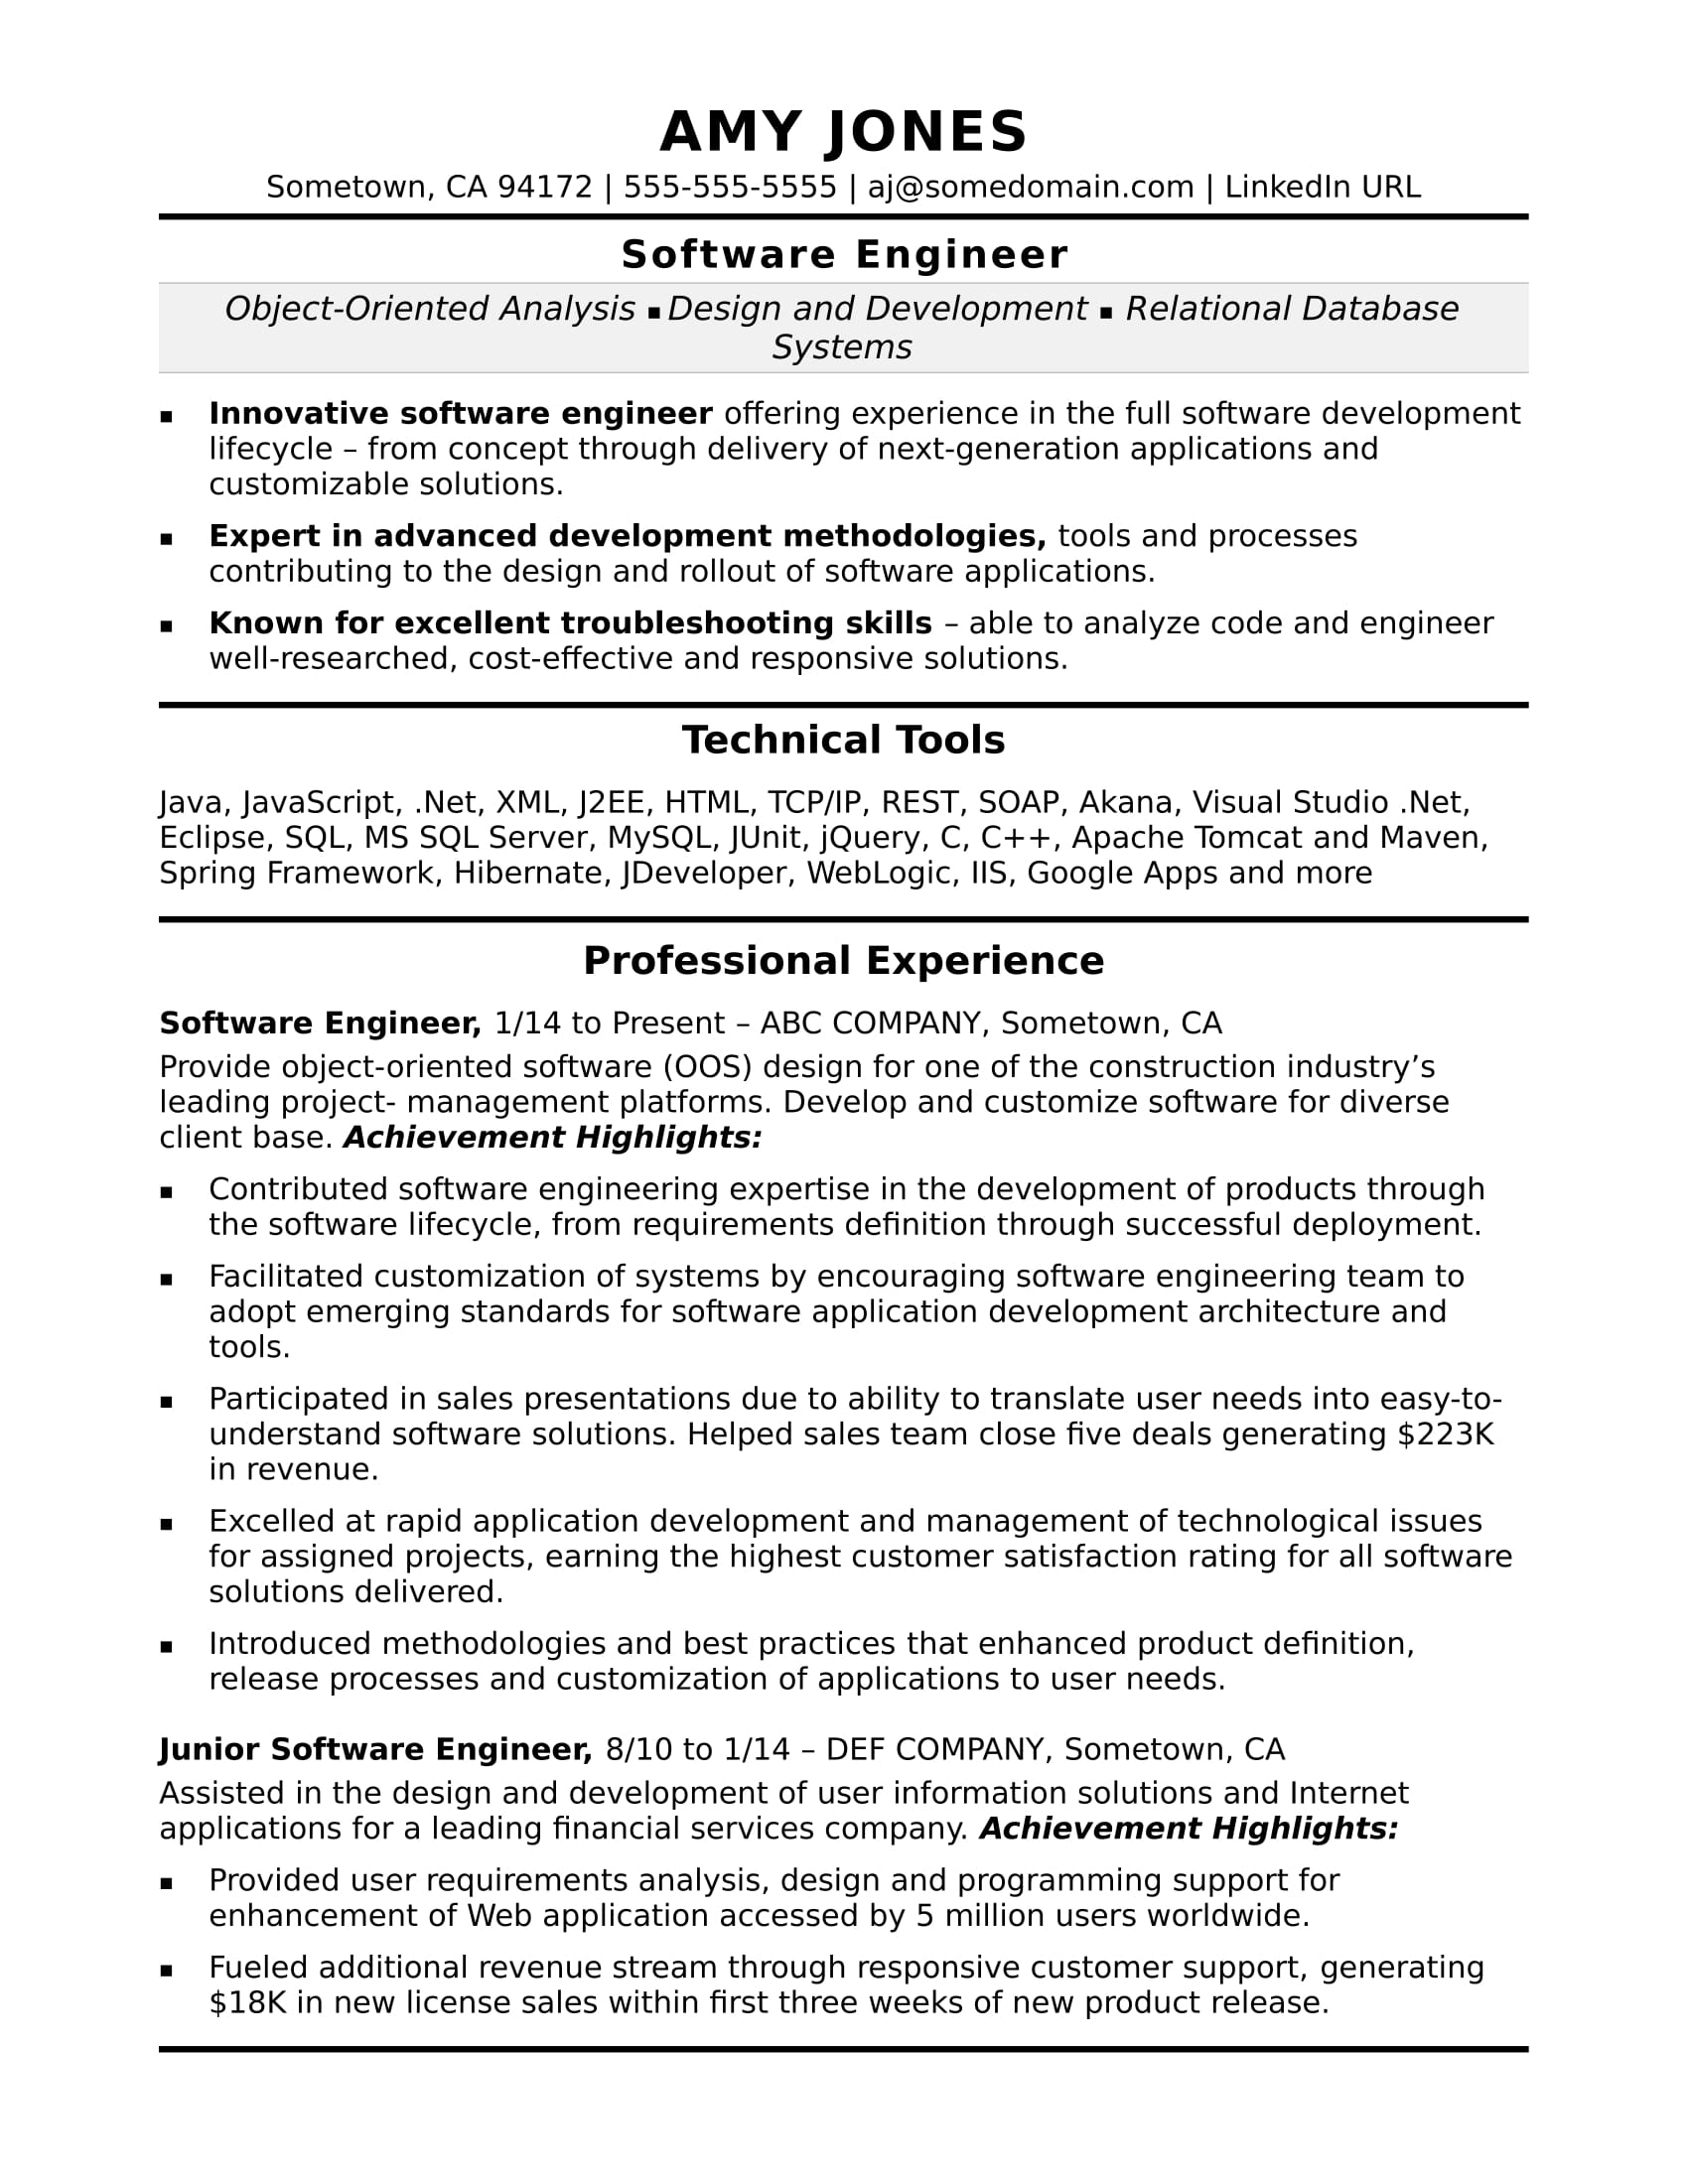 Midlevel Software Engineer Sample Resume | Monster.com